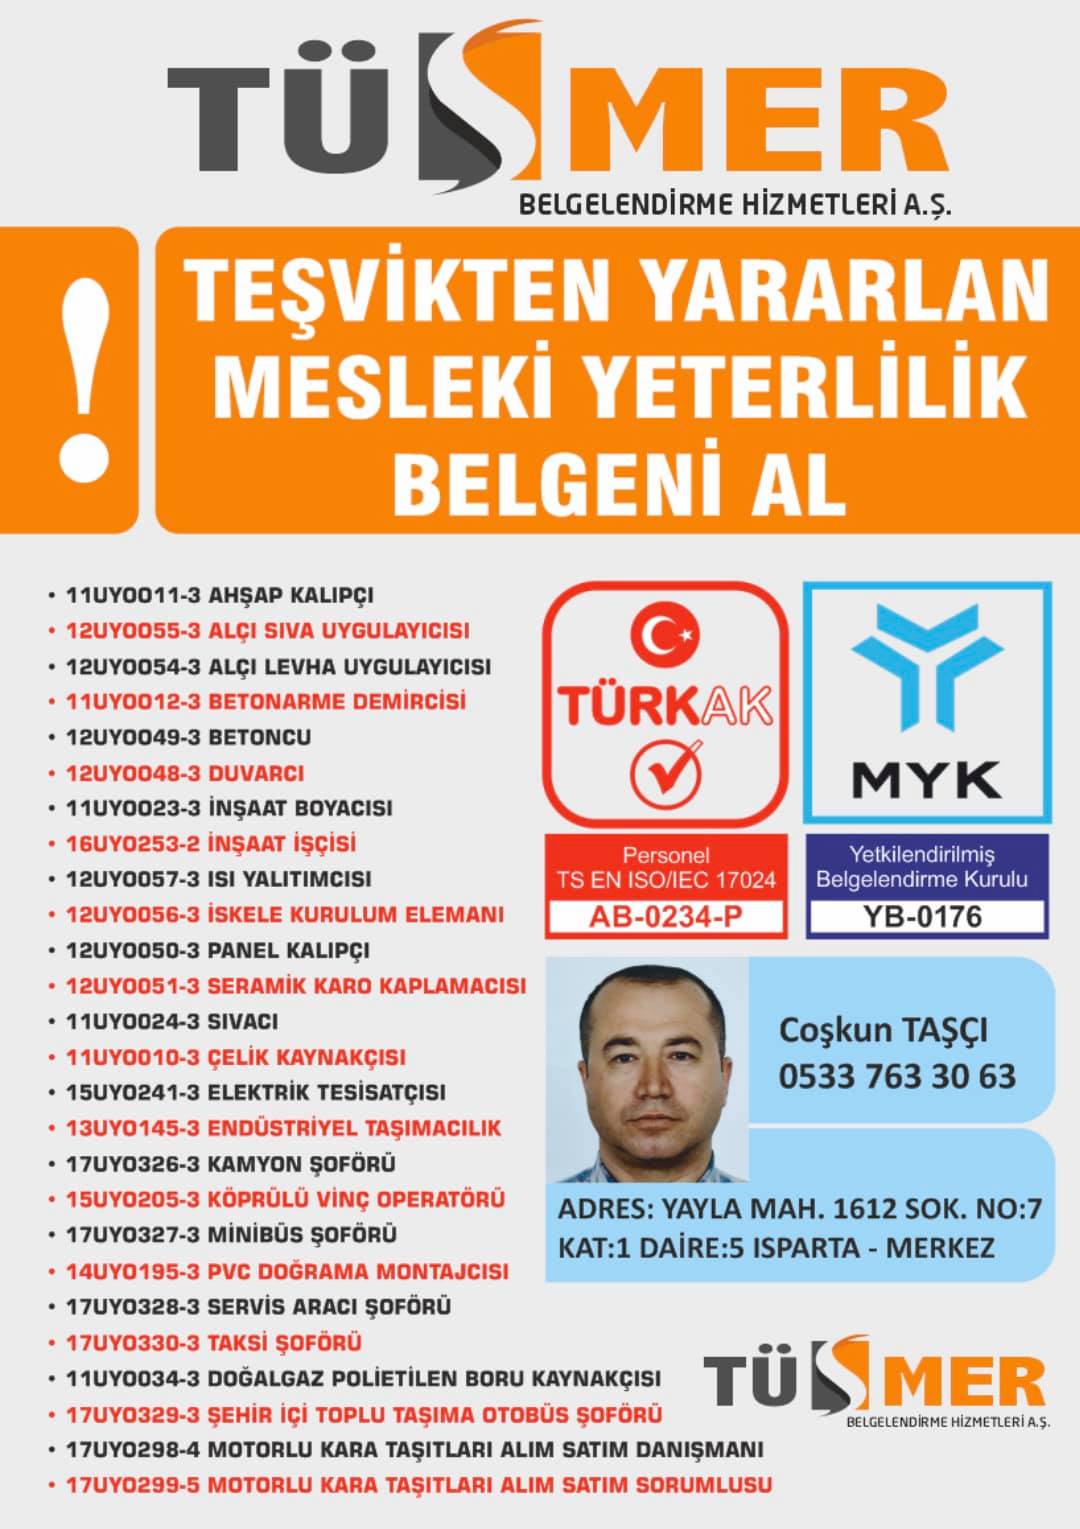 MYK MESLEKİ YETERLİLİK BELGESİ Eğitim Kadıköy İstanbul